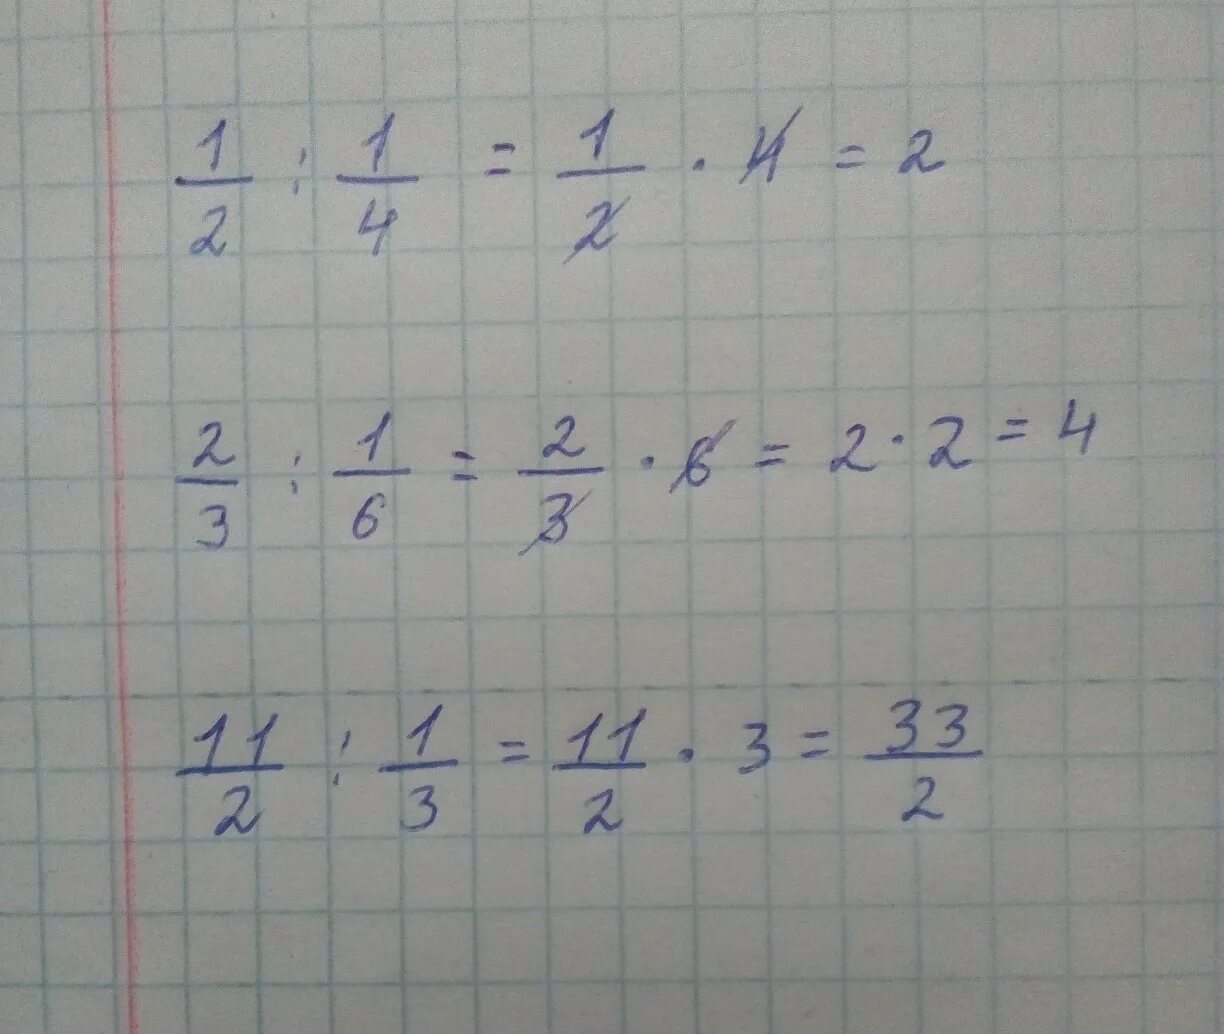 4 5 63 решить. (1/2-1/3):(1/3-1/4)*(3/2). (2 1/2+3 1/3)*6. (1/2-1/3):(1/3-1/4)*(3/2)=Пошагово. 2 2/3×3,5÷ 3 1/3.